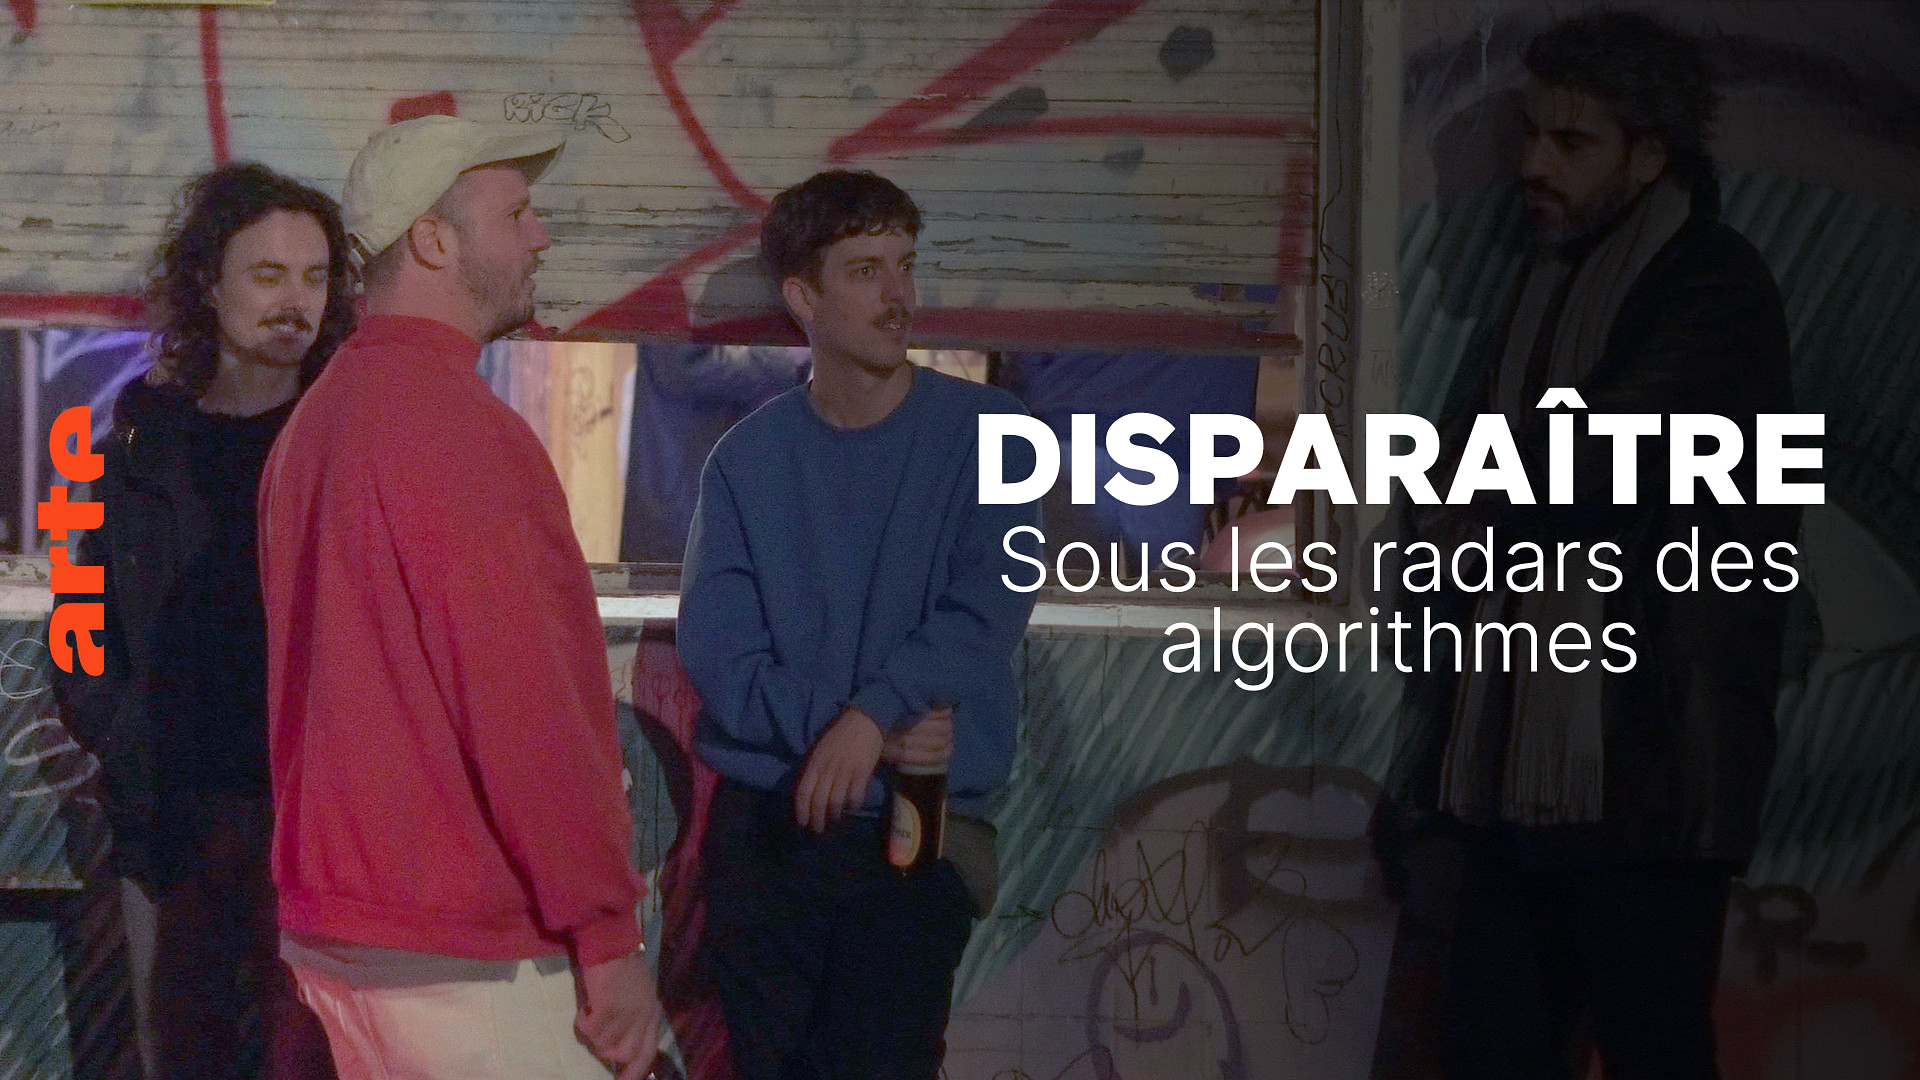 DISPARAÎTRE - Sous les radars des algorithmes - Regarder le documentaire complet | ARTE